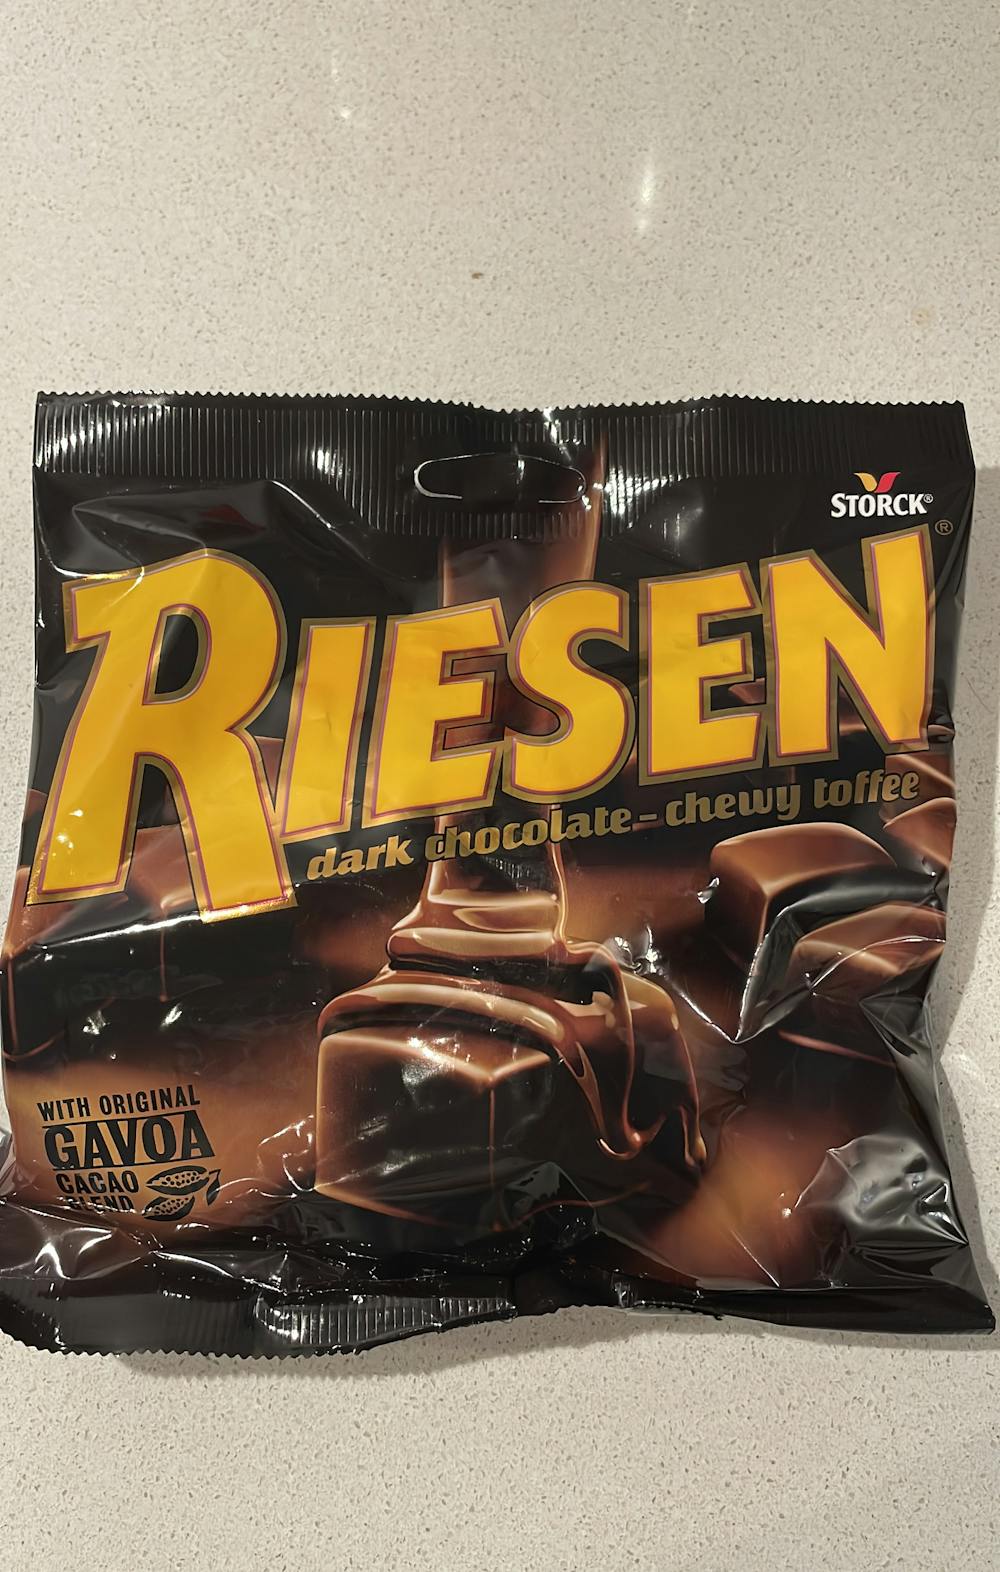 Risen dark chocolate chewy toffee, Riesen